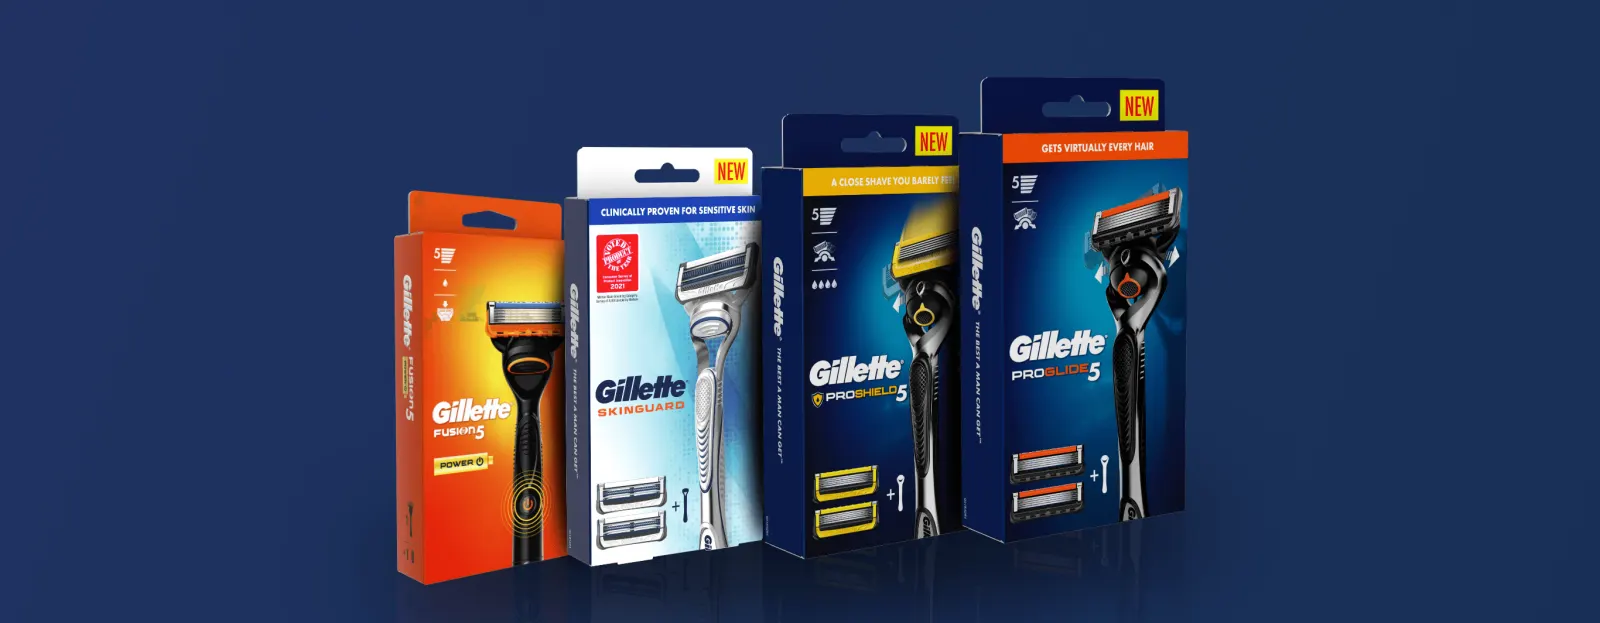 Gillette presenta su mayor innovación en los últimos 10 años